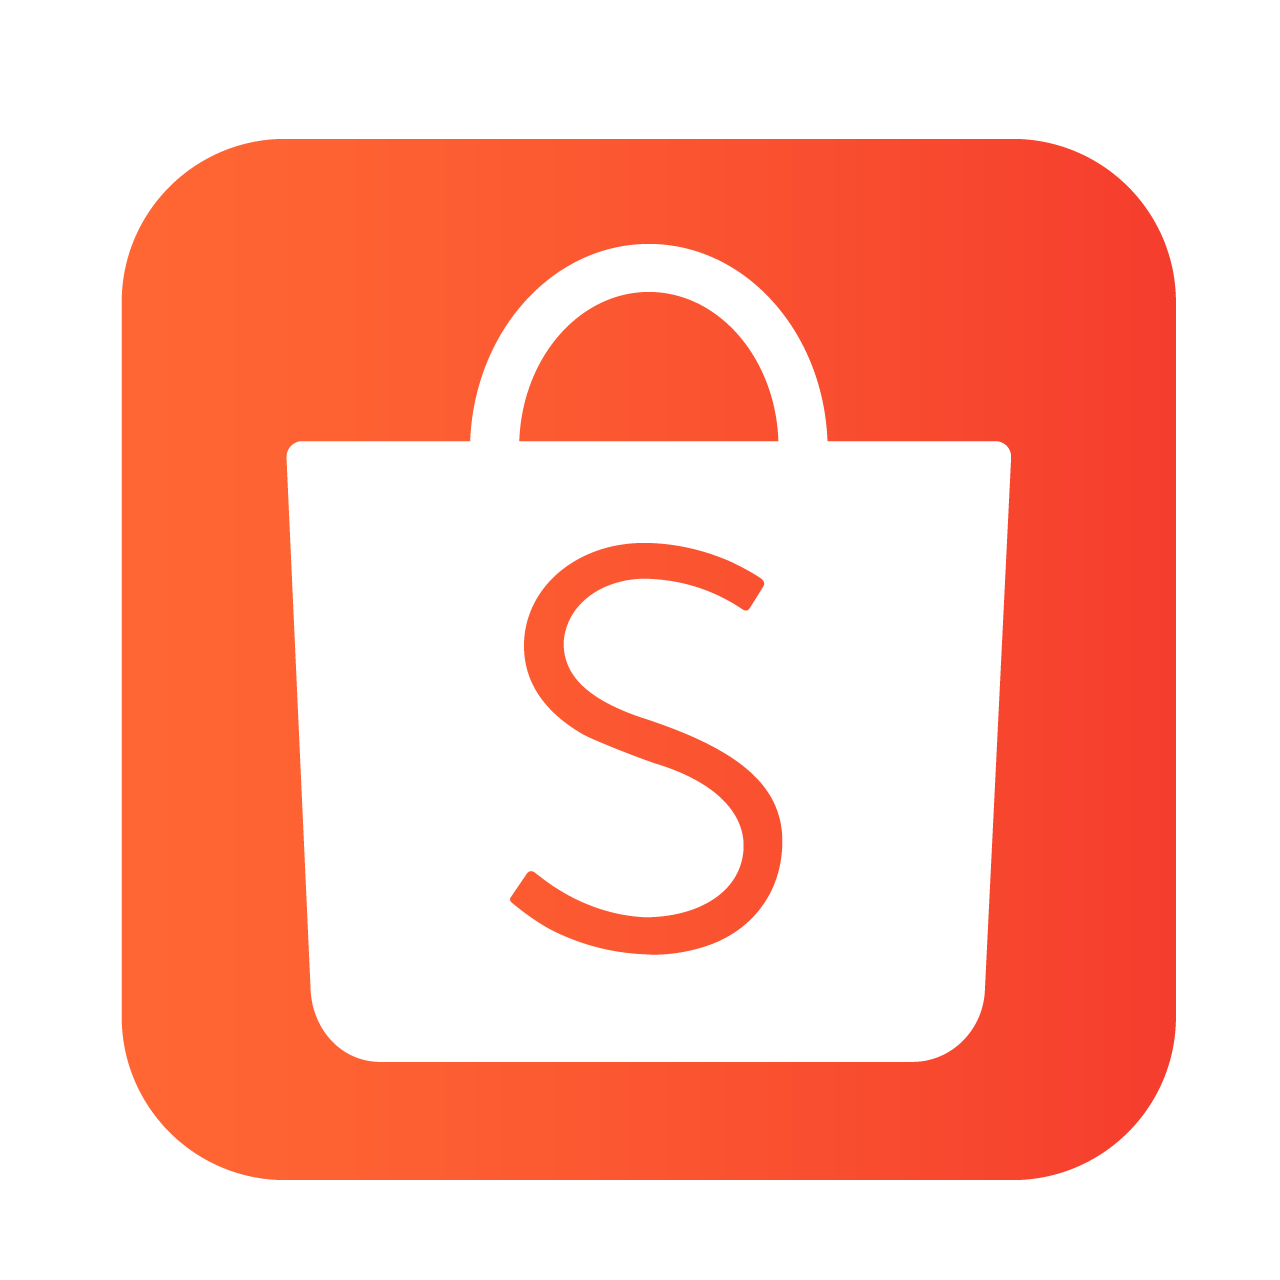 Shopee Logo Download Free Image PNG Image